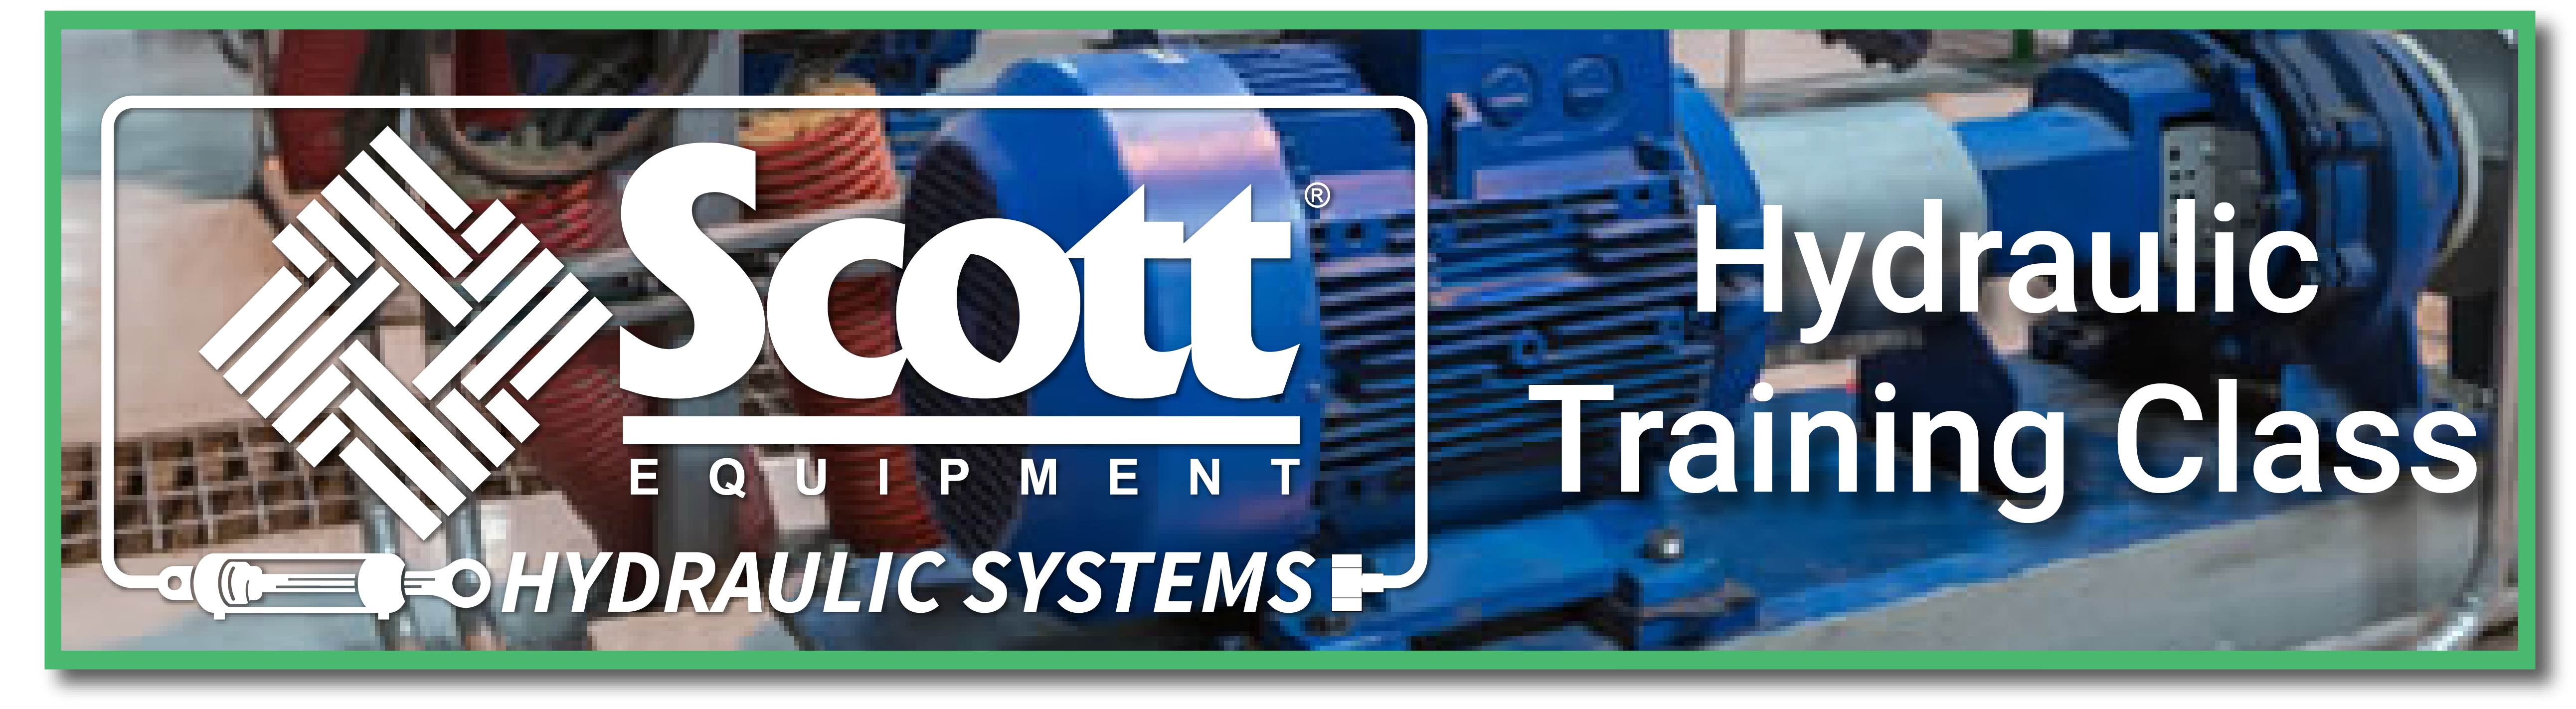 Hydraulics Training - Scott Equipment Company